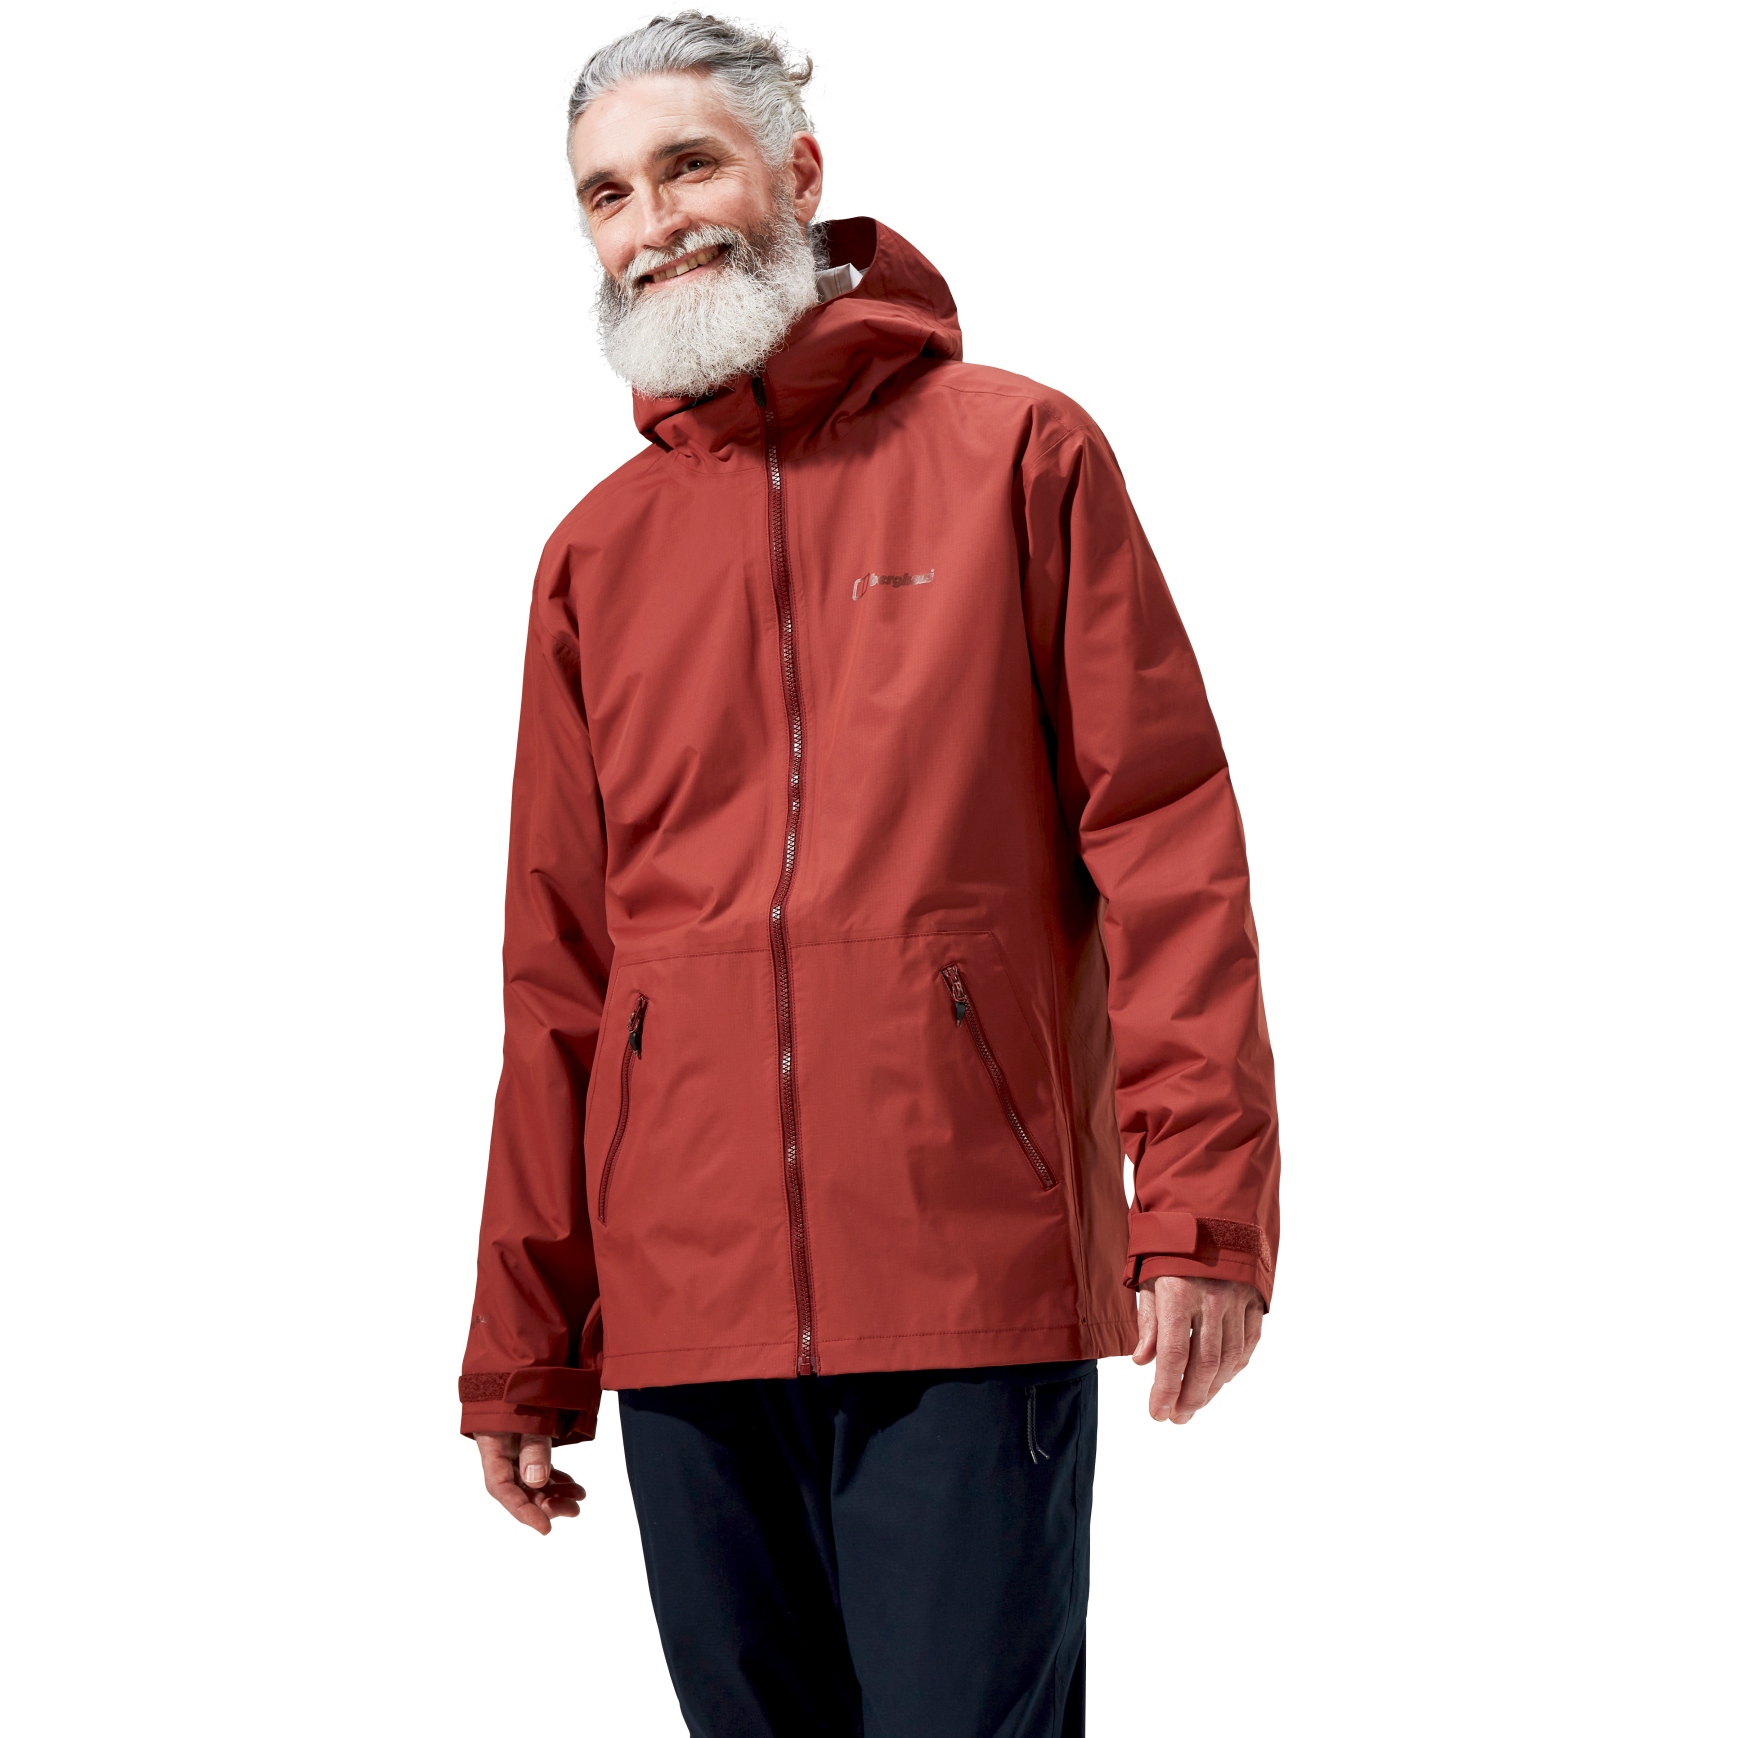 Produktbild von Berghaus Deluge Pro 2.0 Jacke Herren - Red Rust